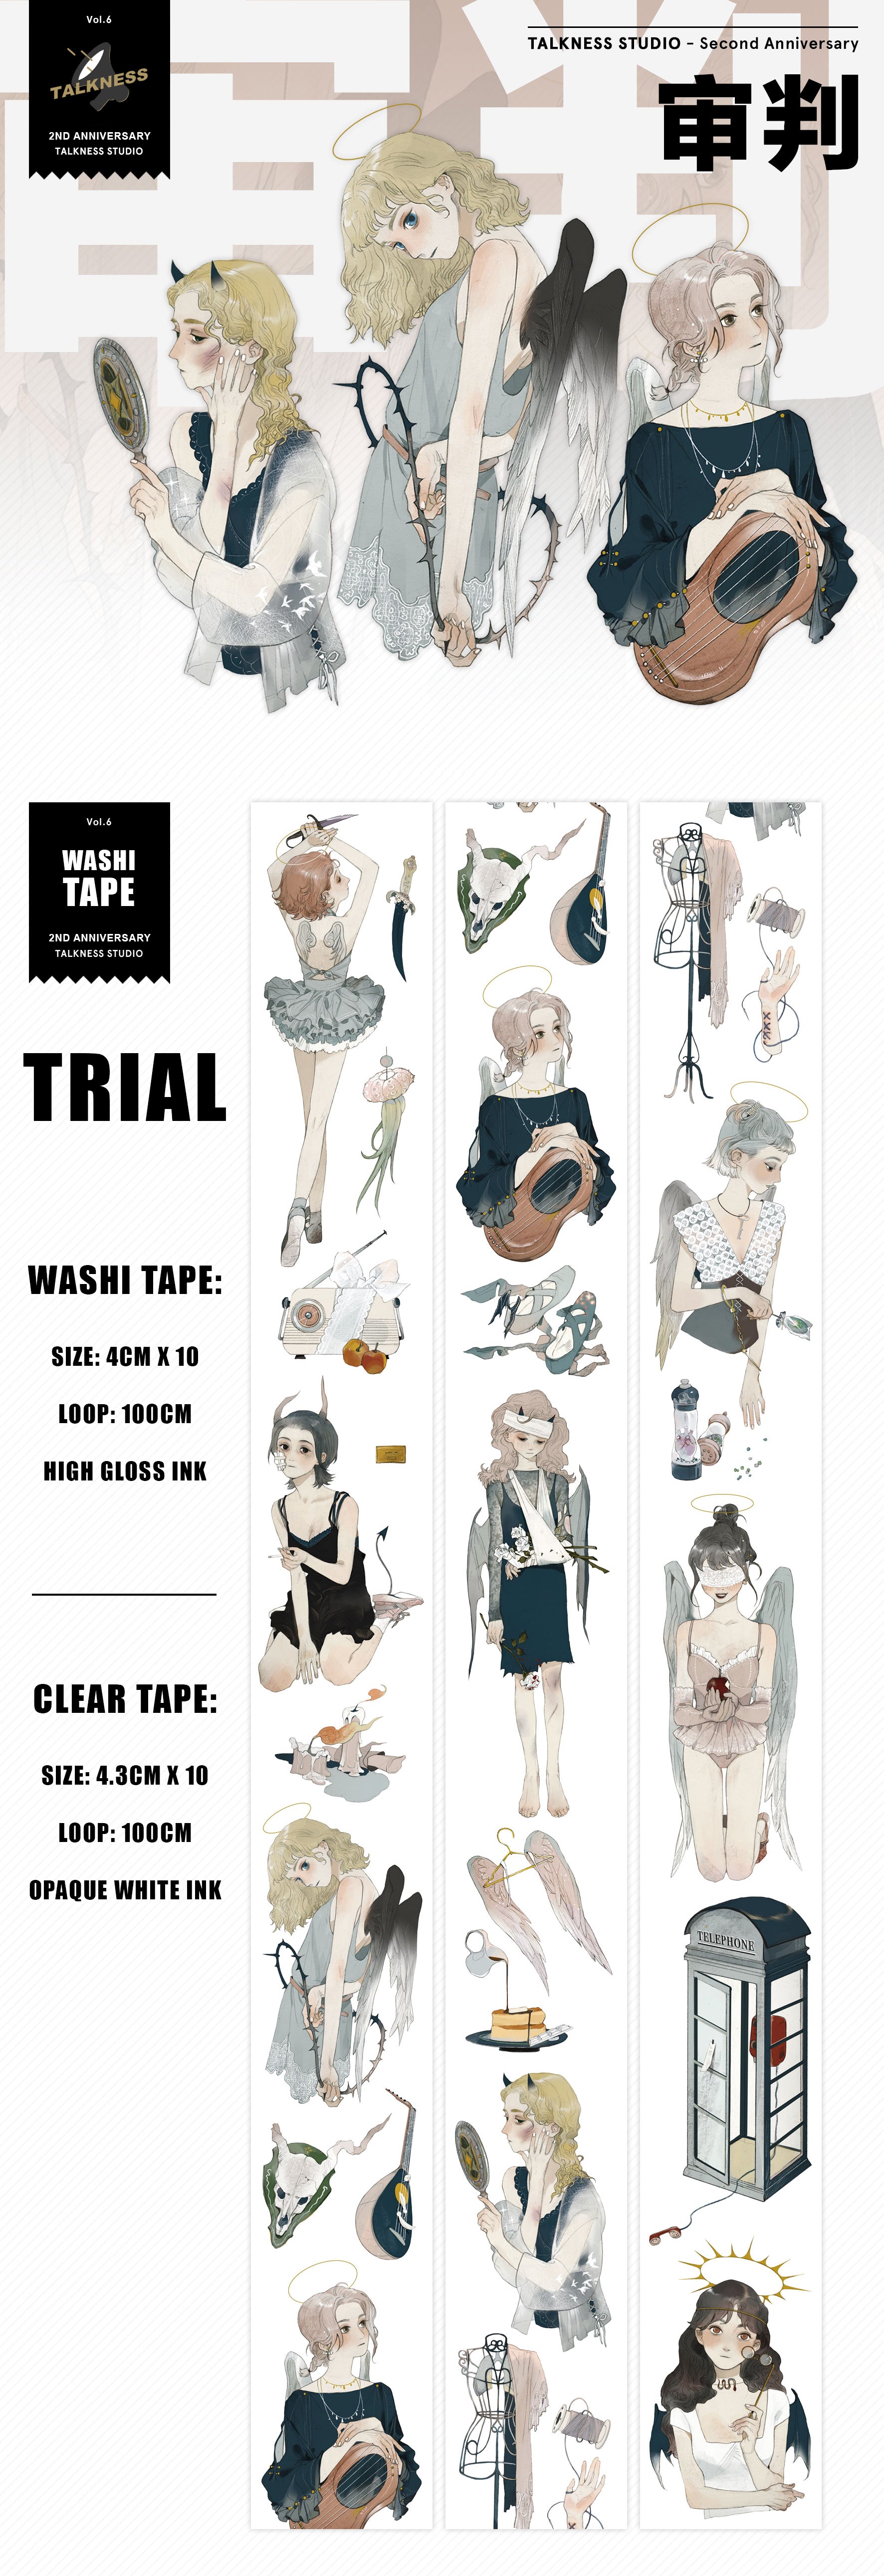 Talkness Studio Masking Tape: Trial